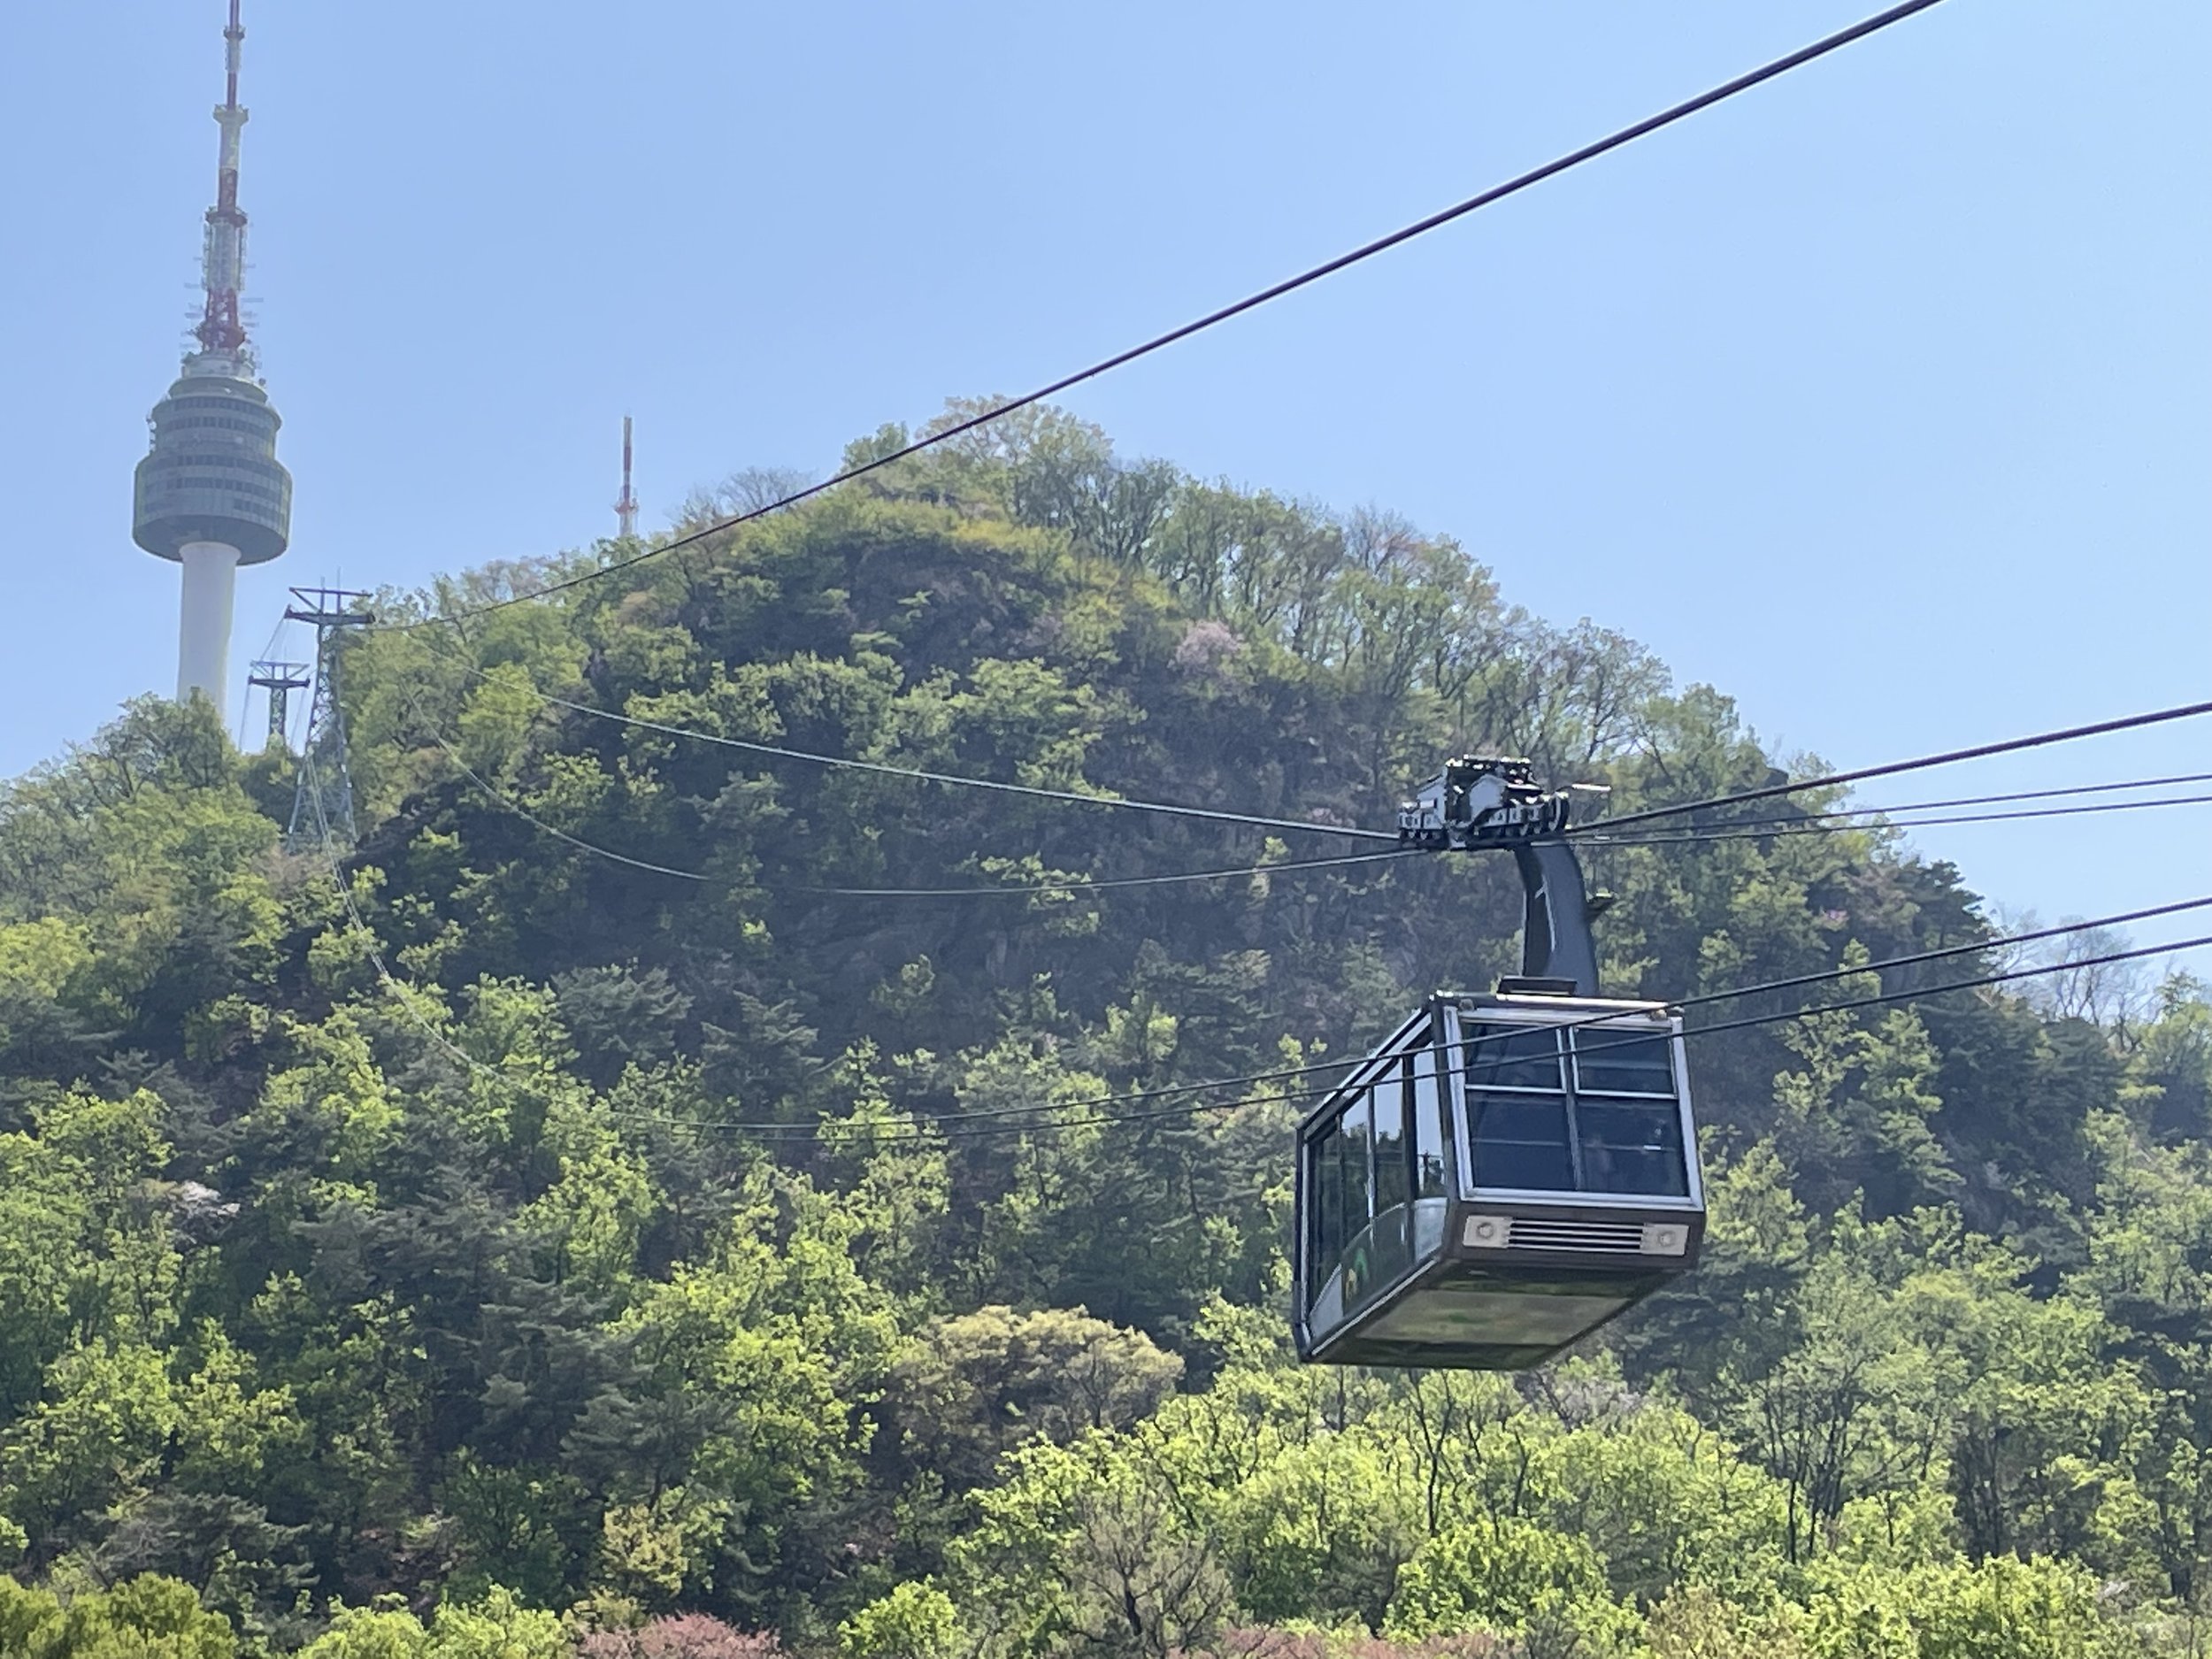 Namsan Cable Car and Namsan Tower